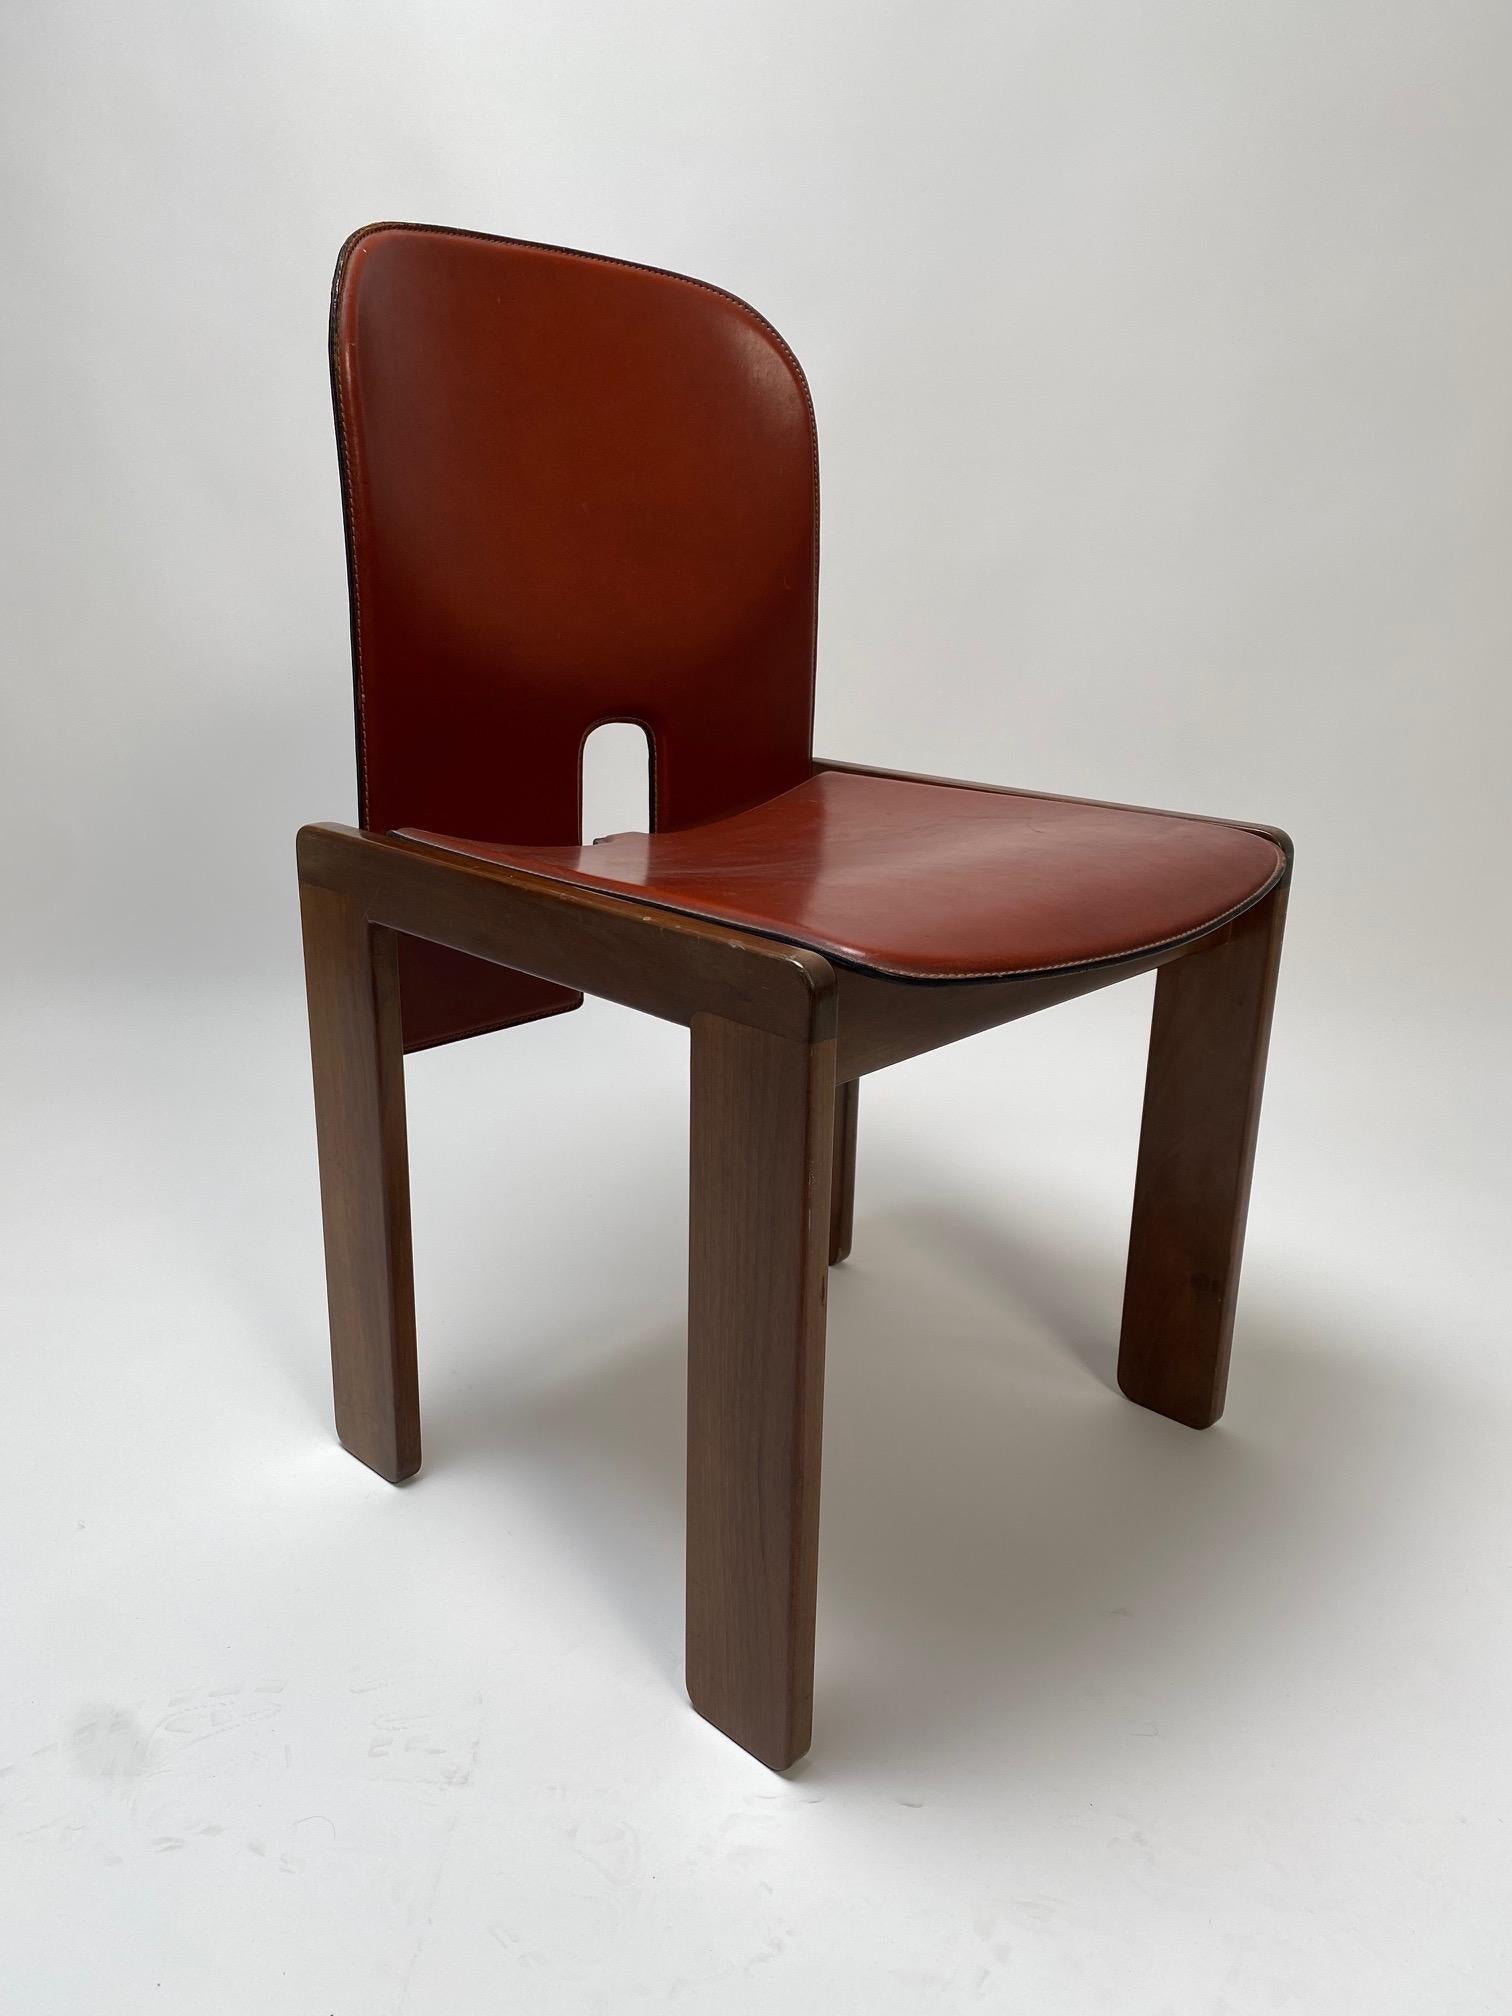 Afra et Tobia Scarpa, ensemble de 2 chaises en cuir et bois réalisées pour Cassina, Italie, 1967.

C'est l'une des icônes du design italien, un meuble parfait pour être utilisé comme chaises de salle à manger mais aussi pour l'étude ou le